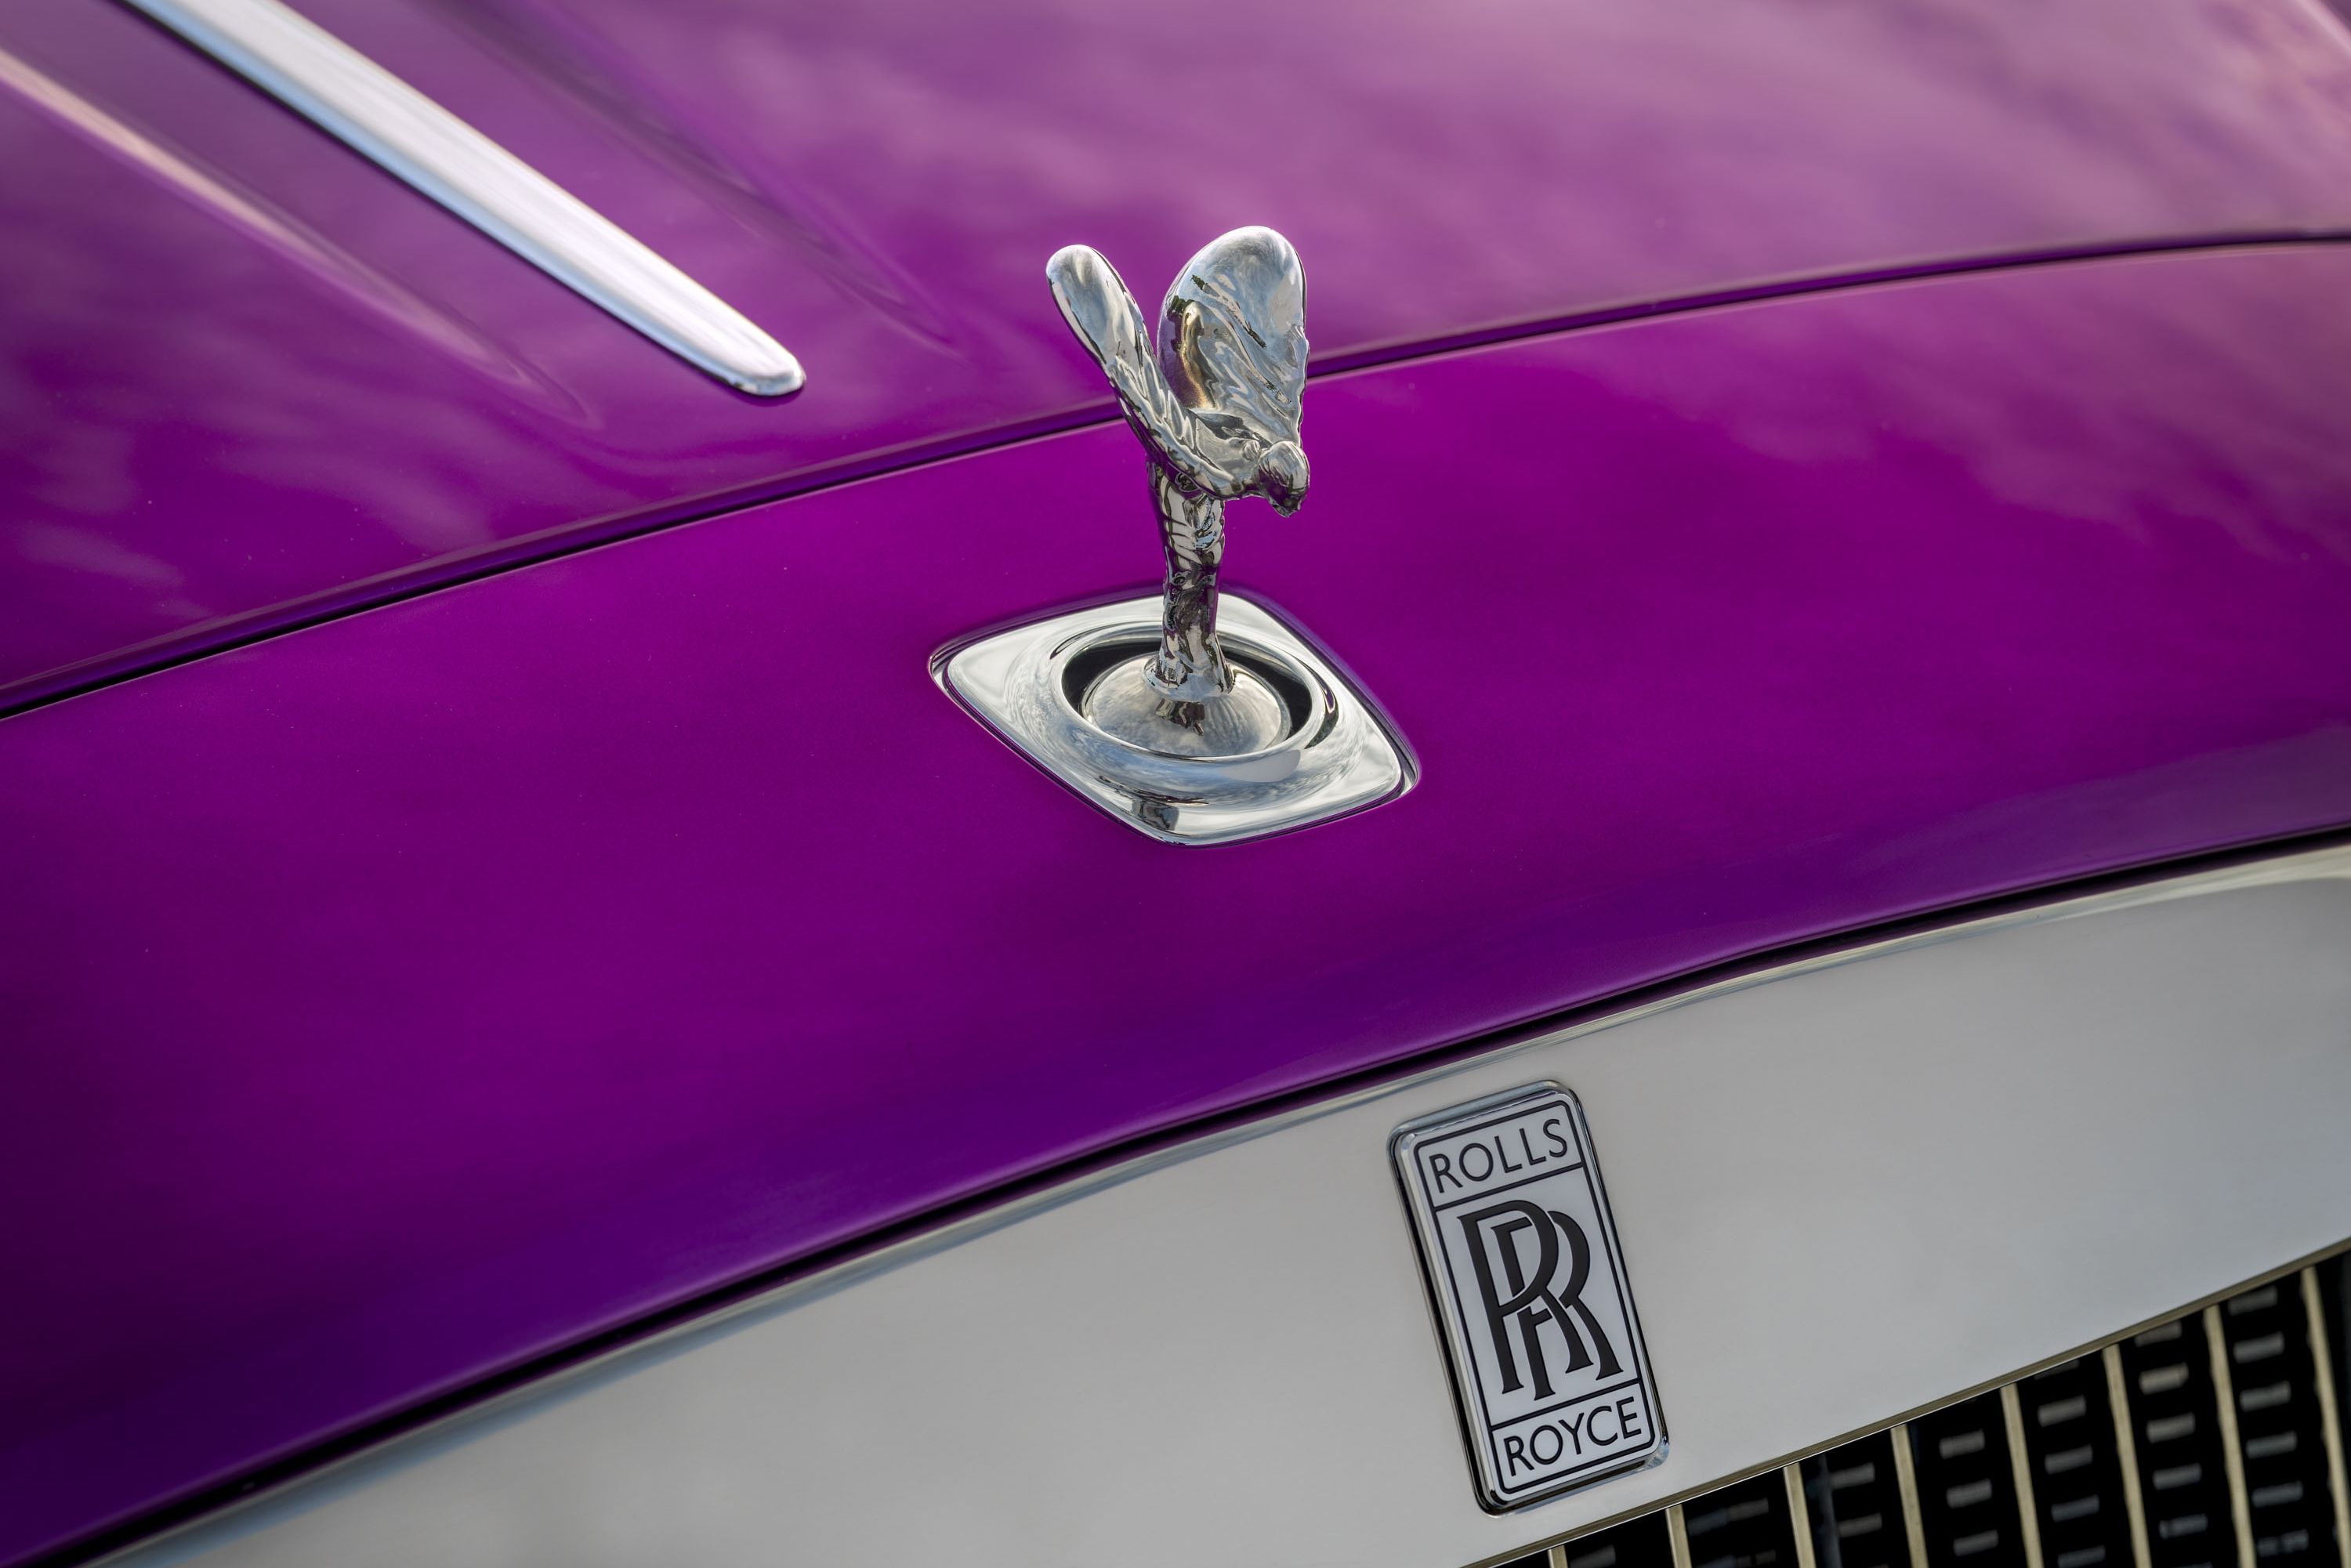 2017 Rolls Royce Dawn in Fuxia